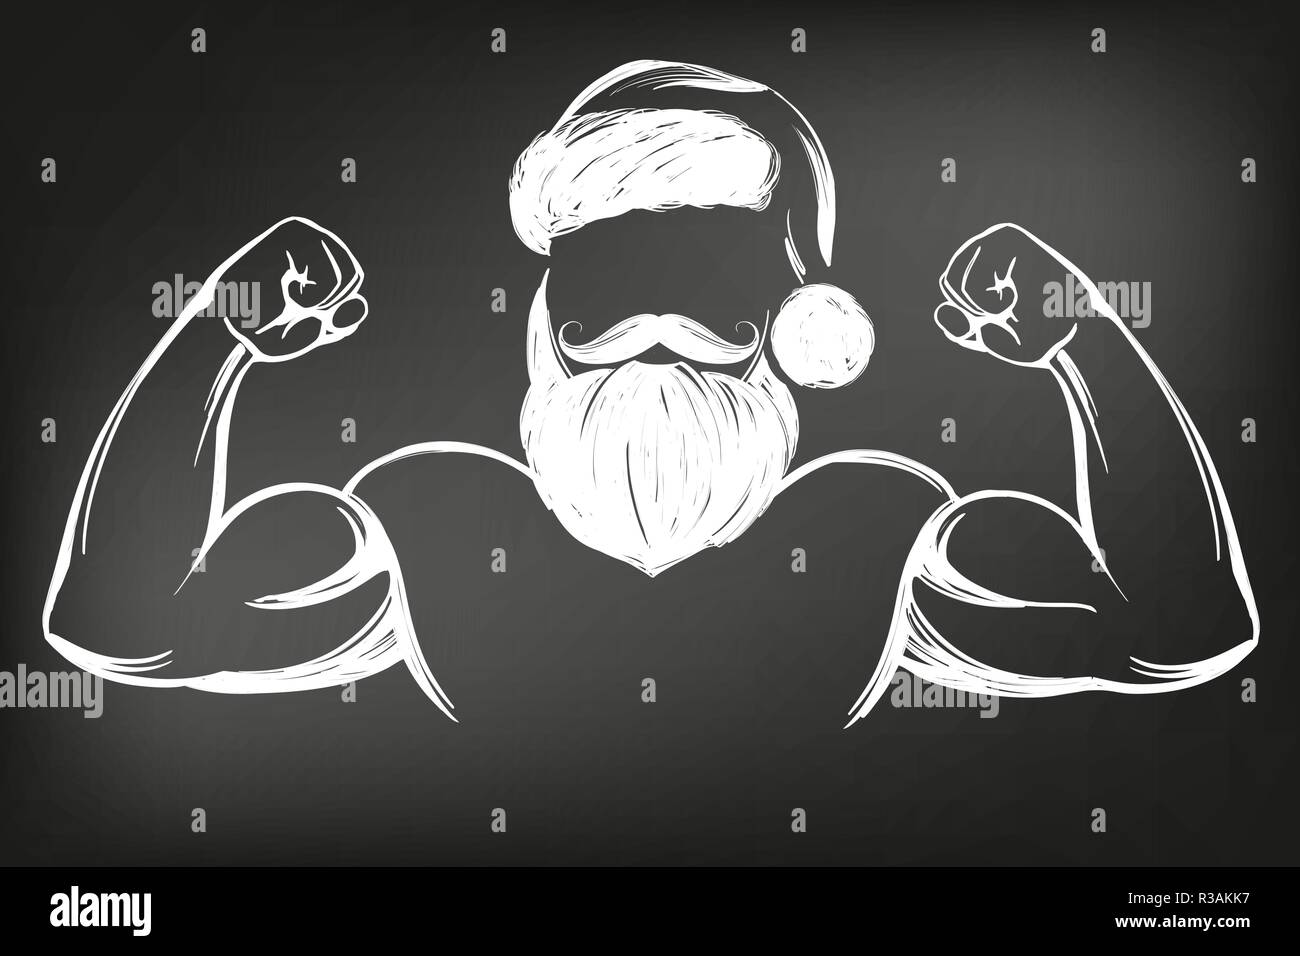 Babbo Natale uomo forte, sport, simbolo di Natale disegnati a mano illustrazione vettoriale Bozzetto disegnato in gesso su una lavagna nera Illustrazione Vettoriale